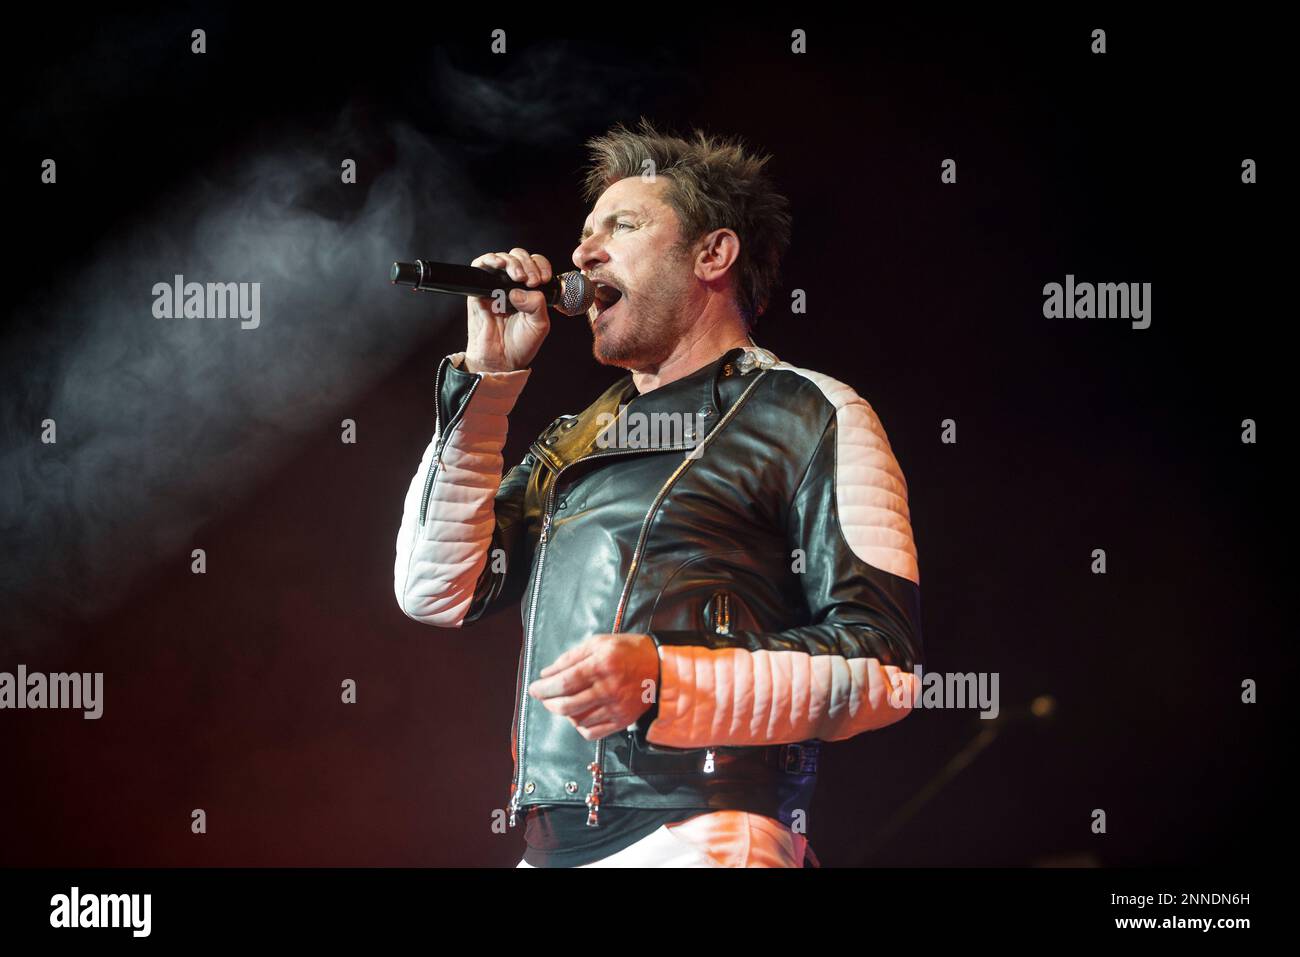 Simon Le Bon von Duran Duran tritt auf der Bühne des SEE Hydro onDecember06, 2015 in Glasgow, Schottland auf Stockfoto